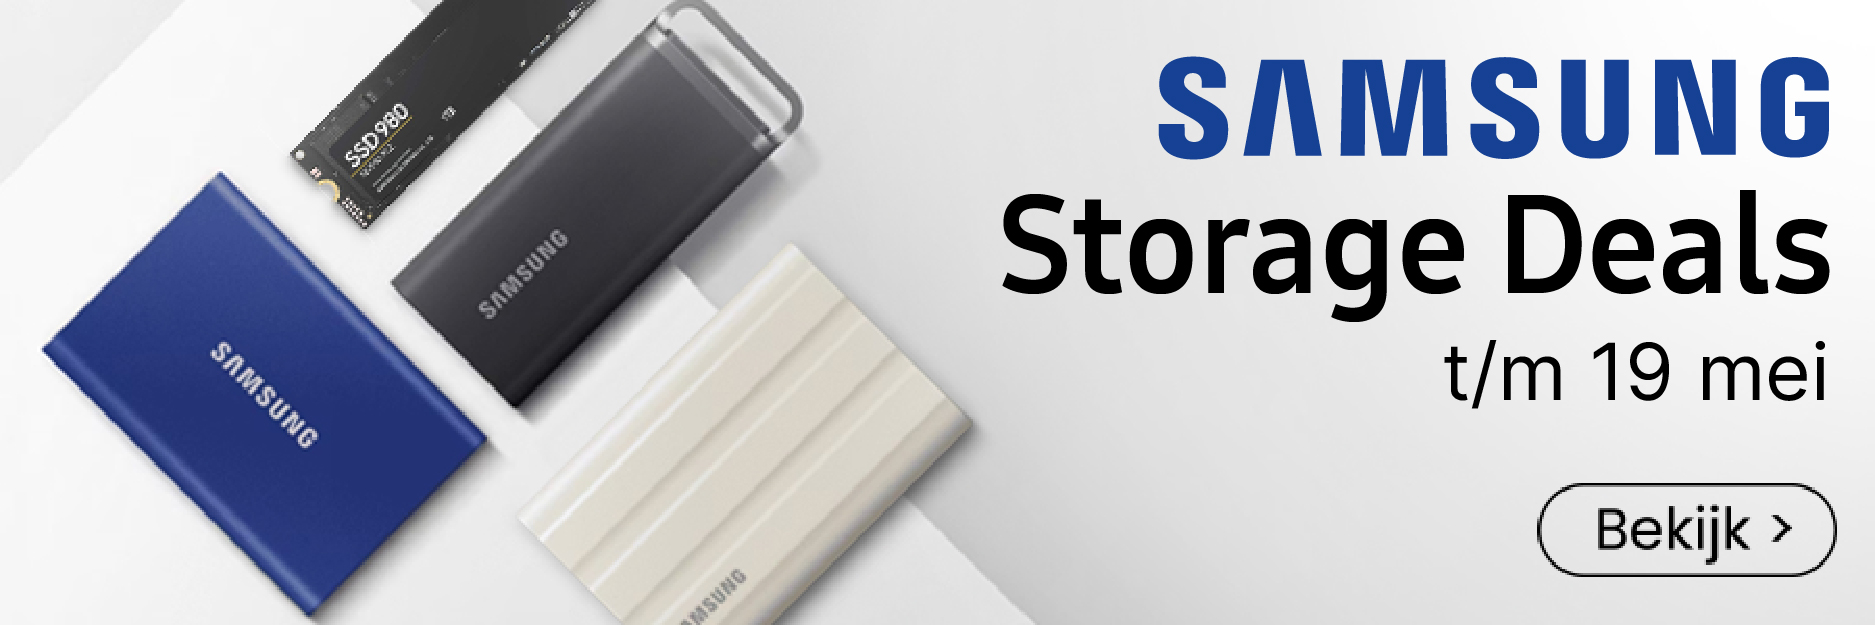 Samsung Storage Deals